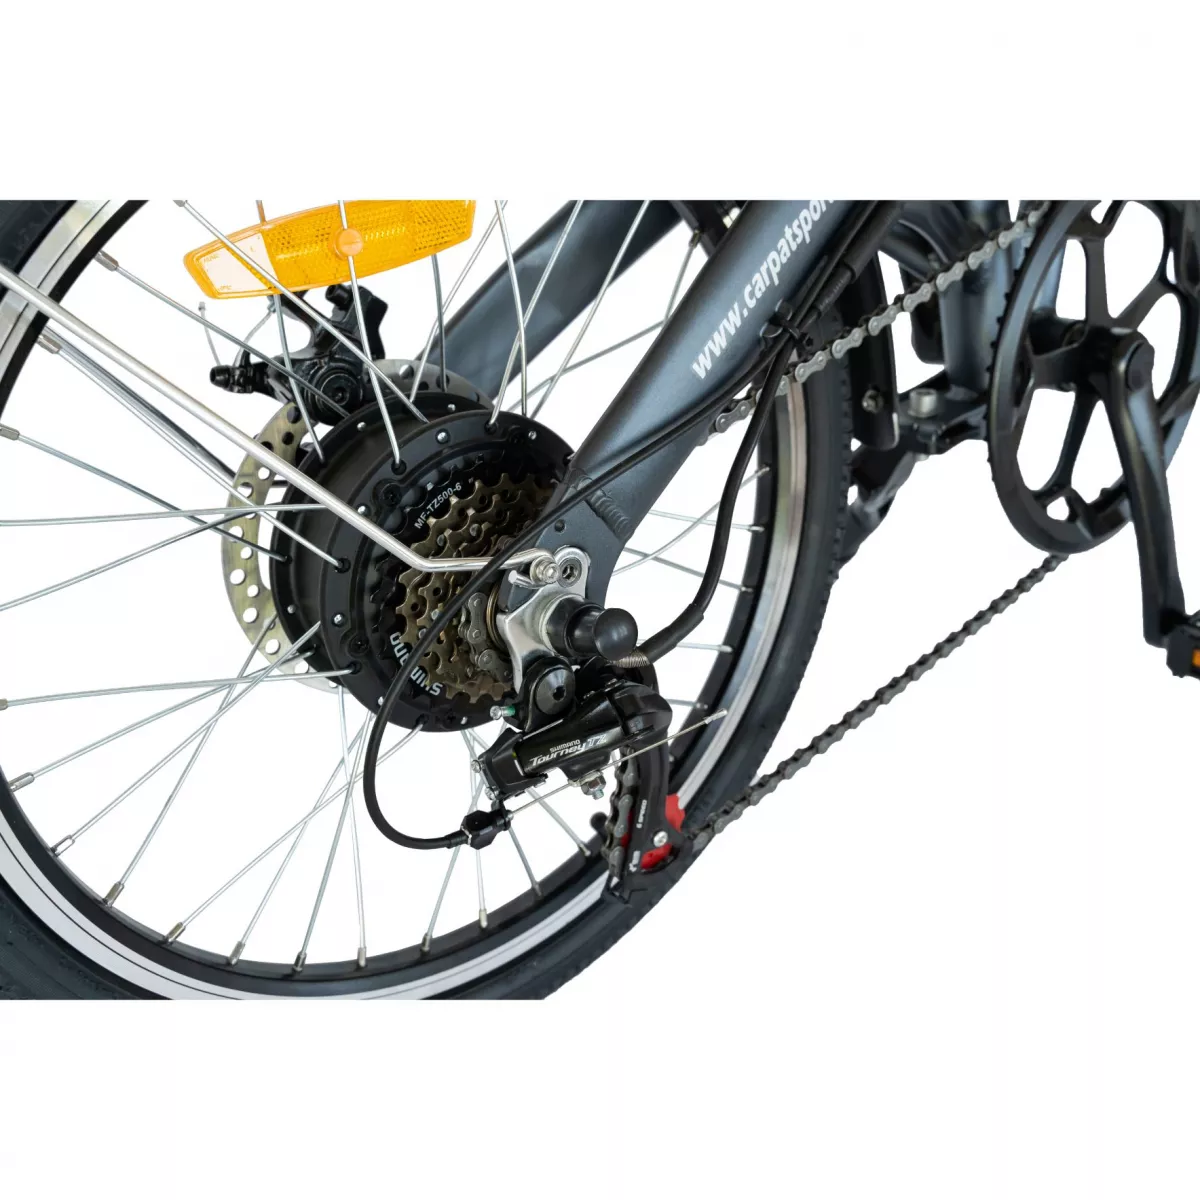 Bicicleta electrica (E-BIKE) pliabila I-ON I1004E, roata 20 inch,  cadru aluminiu, frane mecanice disc, echipare SHIMANO 6 viteze, culoare gri/portocaliu